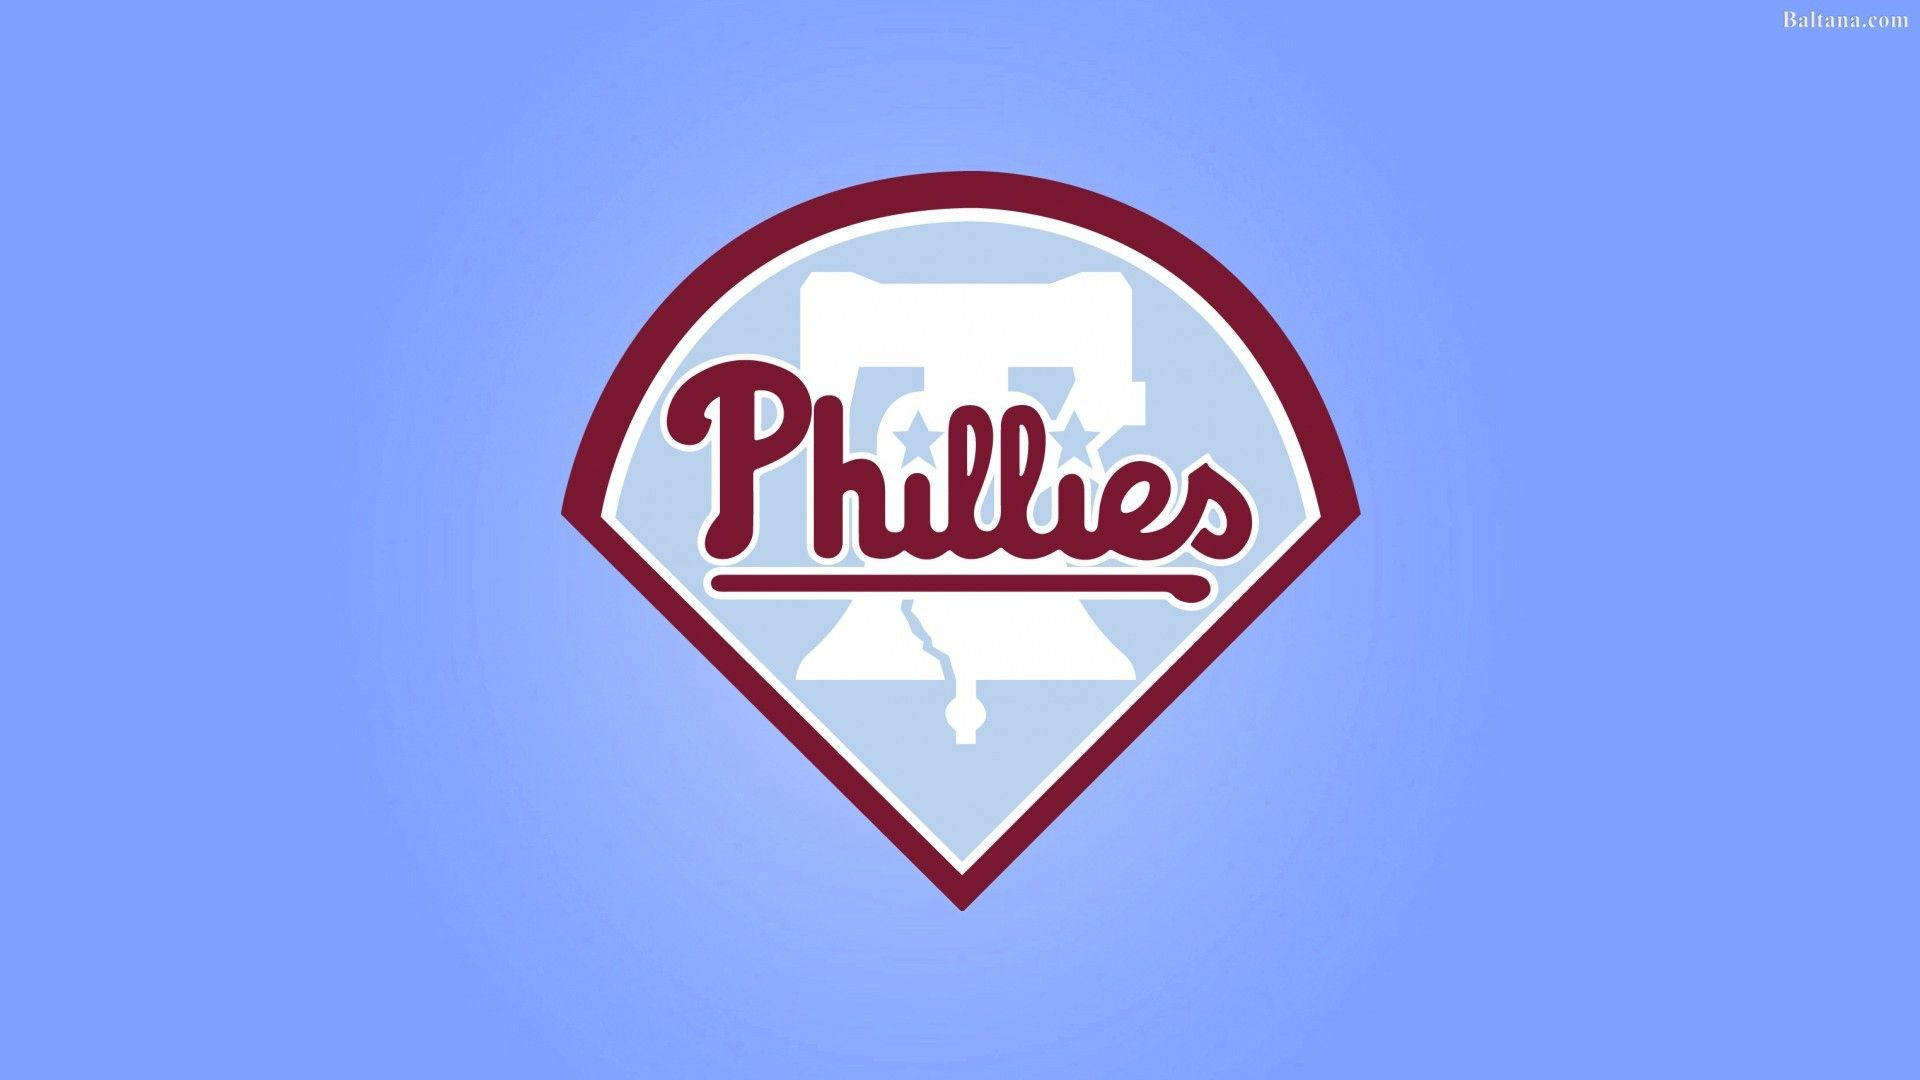 Philadelphia Phillies Pictures